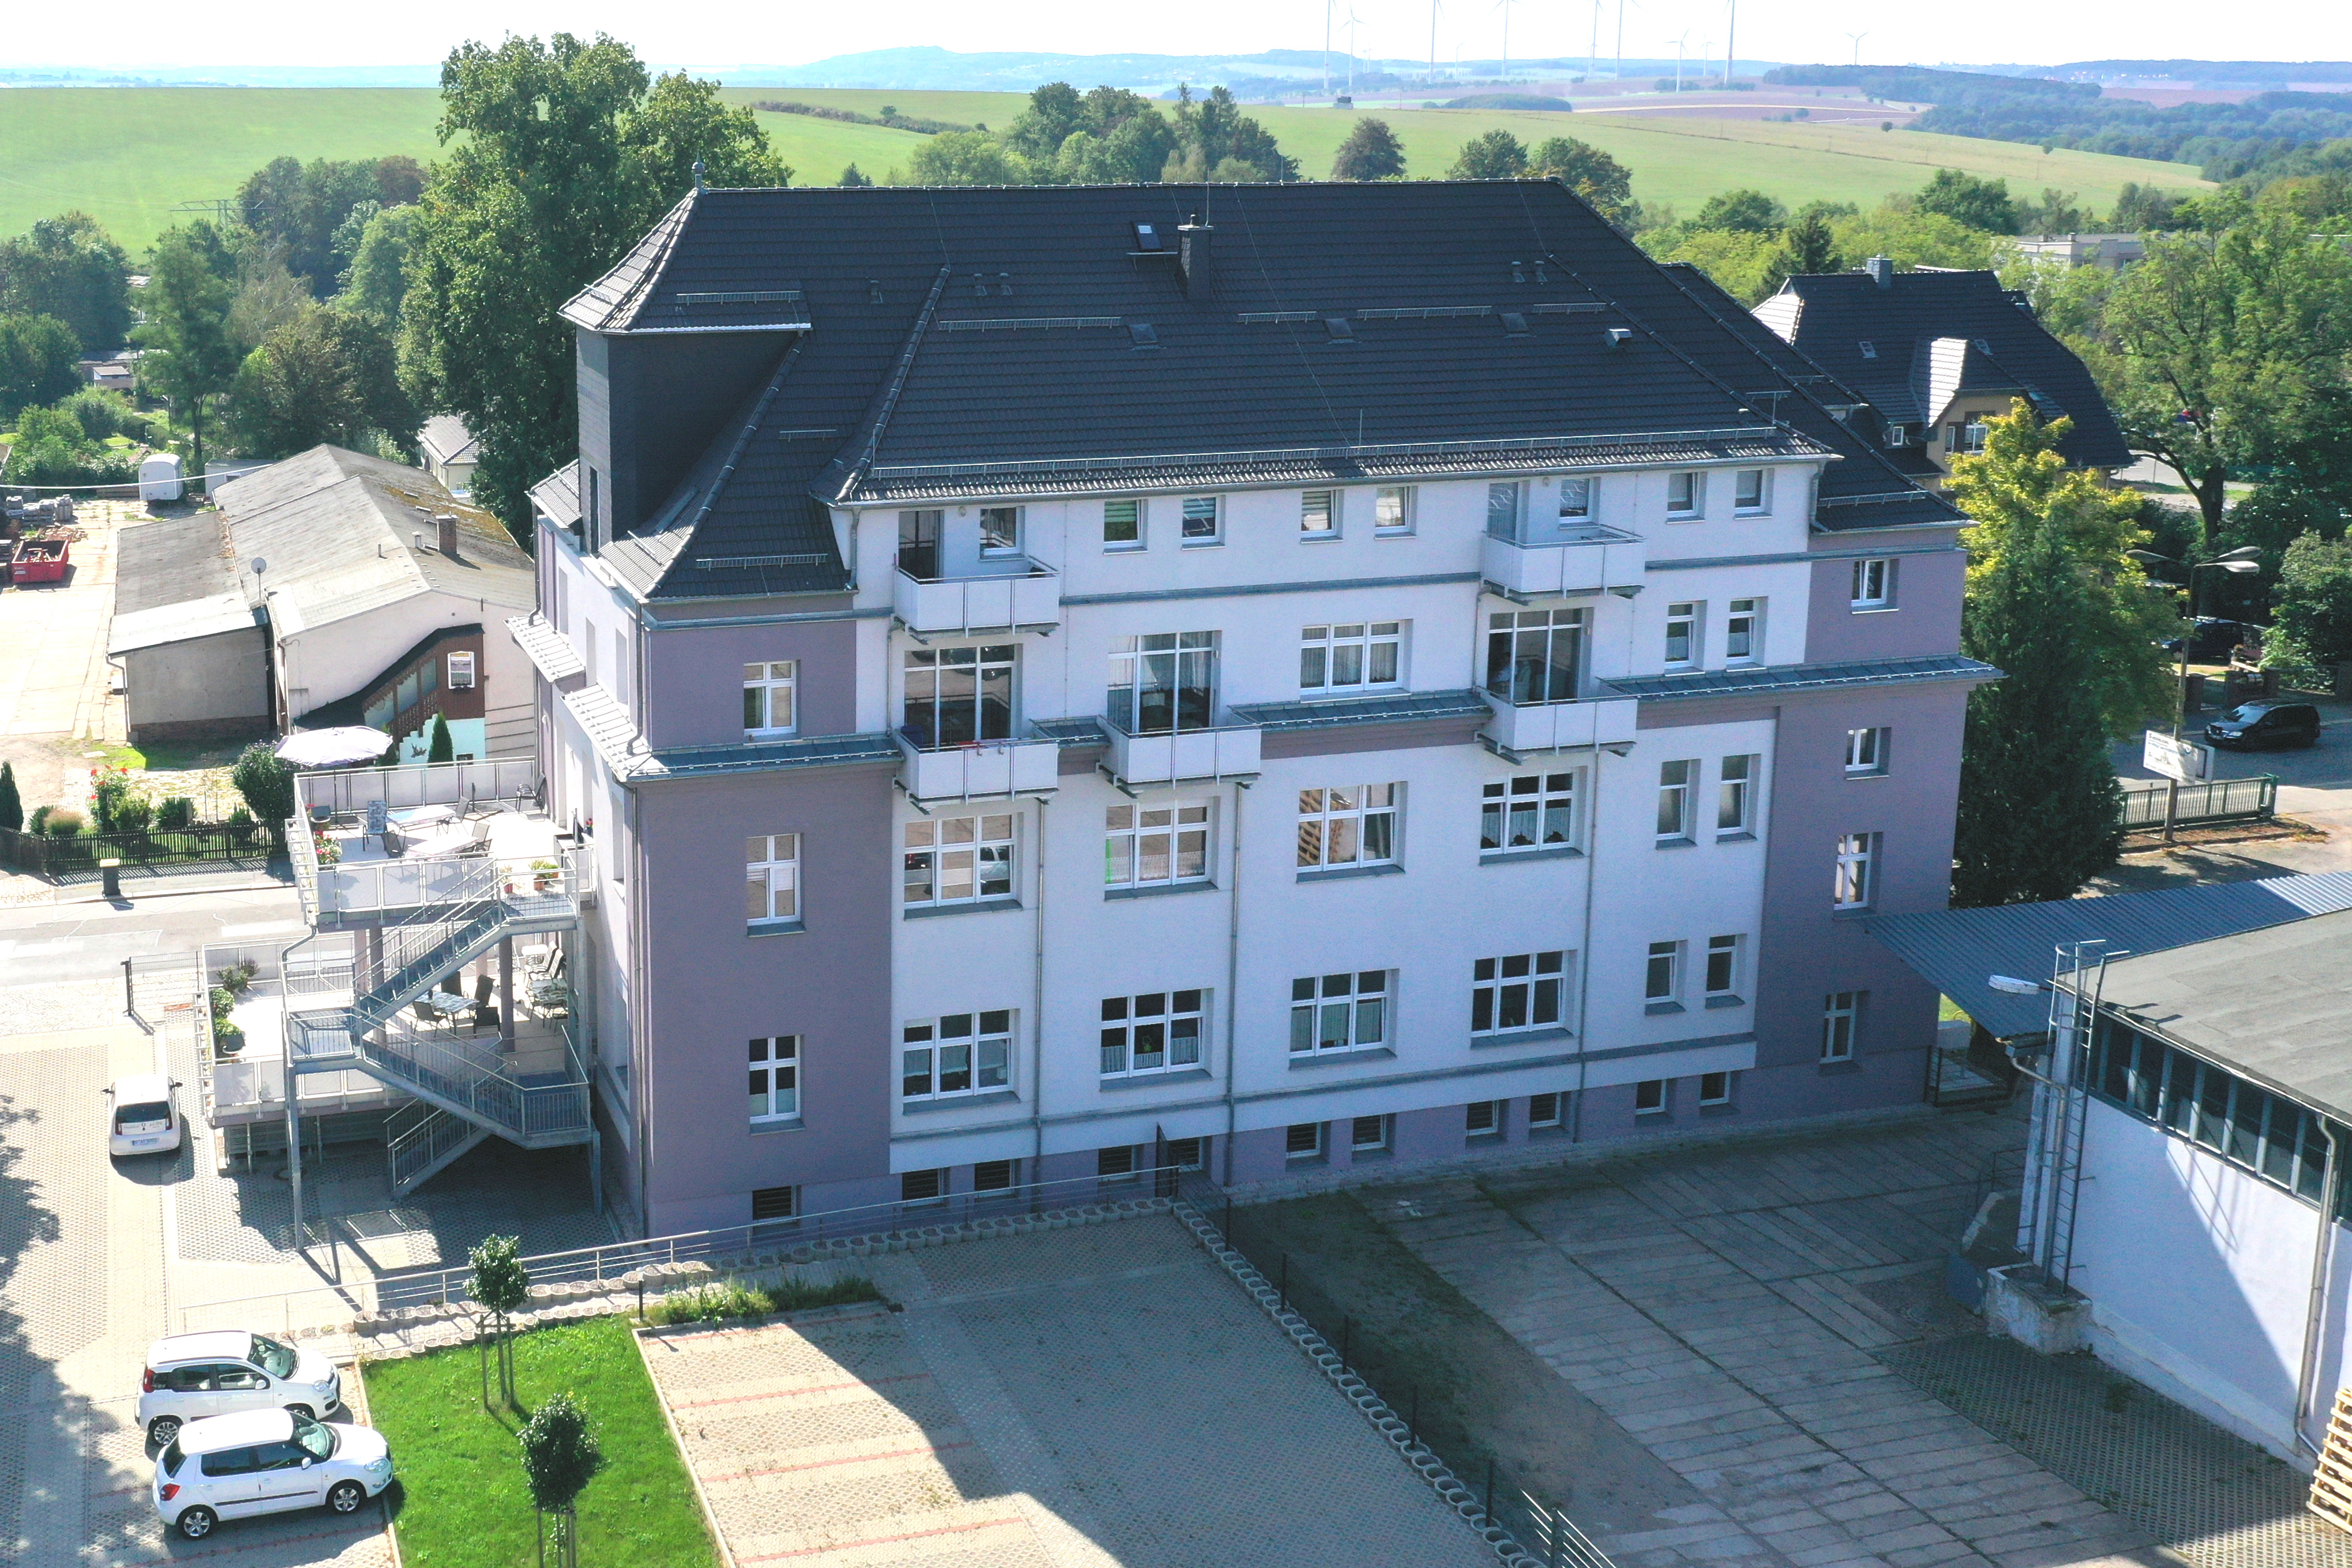 advita Haus Alte Weberei| Pflegedienst in Hohenstein-Ernstthal | Betreutes Wohnen | Pflege-WG